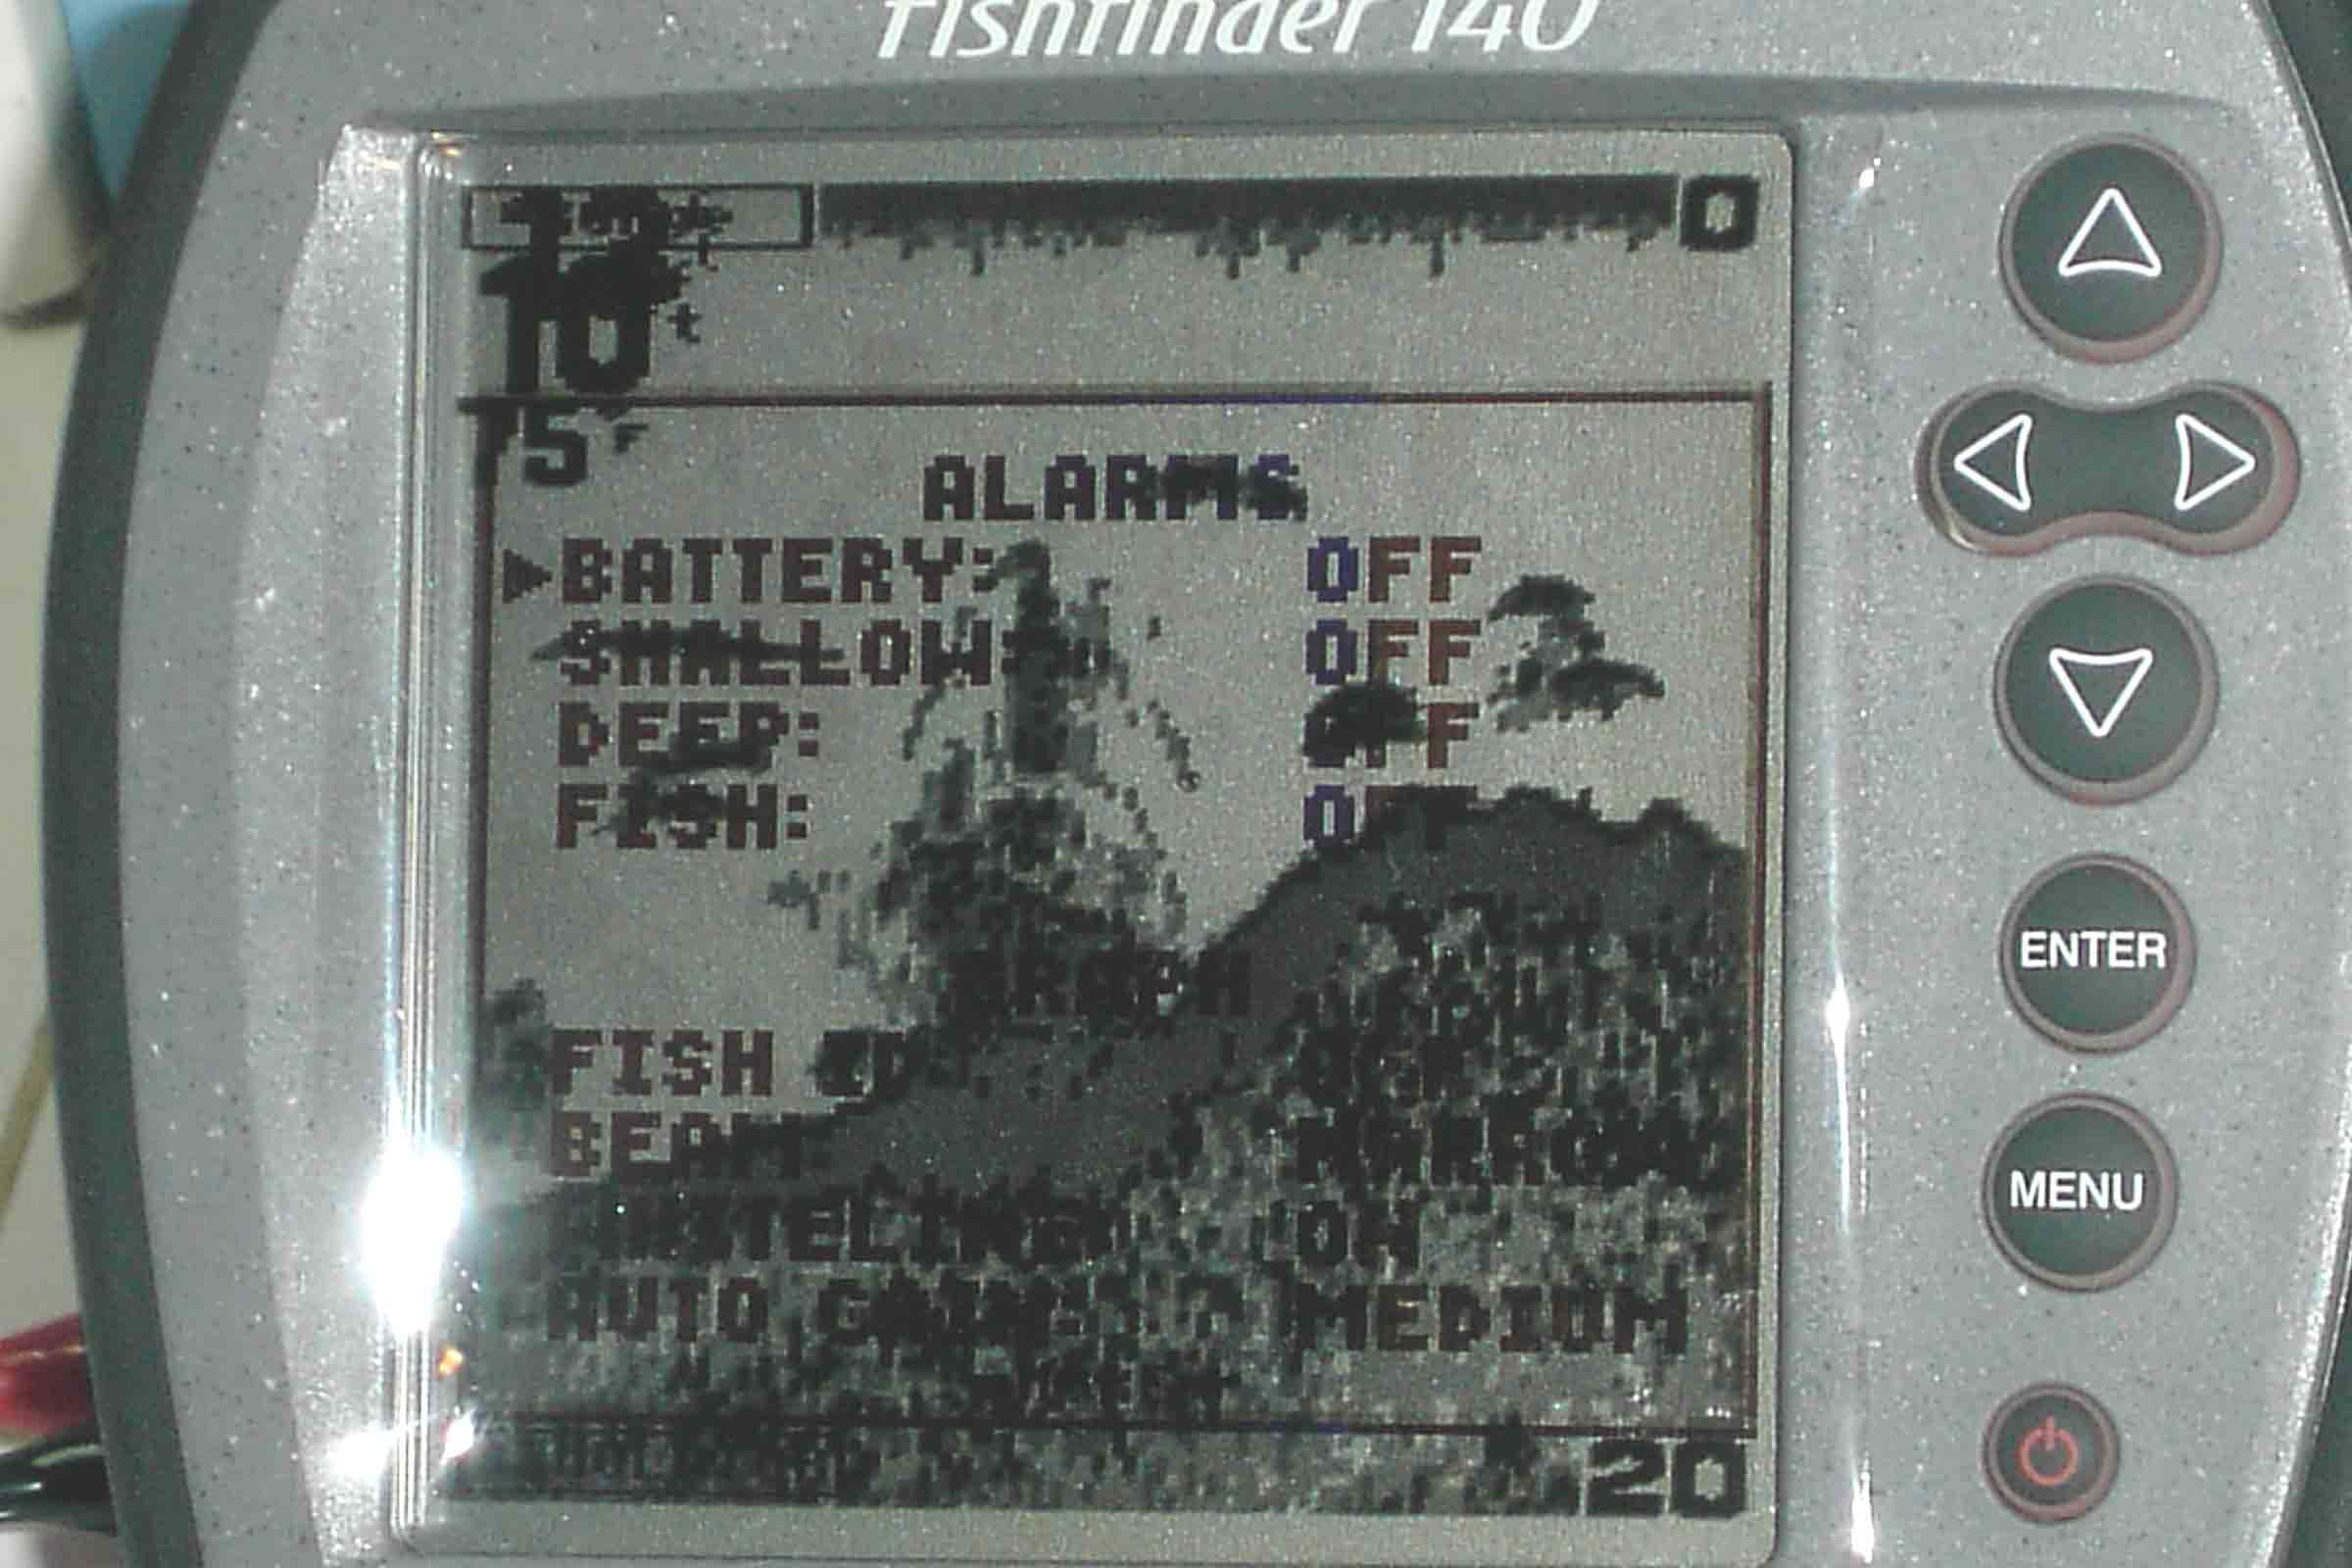 Garmin 140 Fishfinder Depth Finder w/ Accessories - Classified Ads